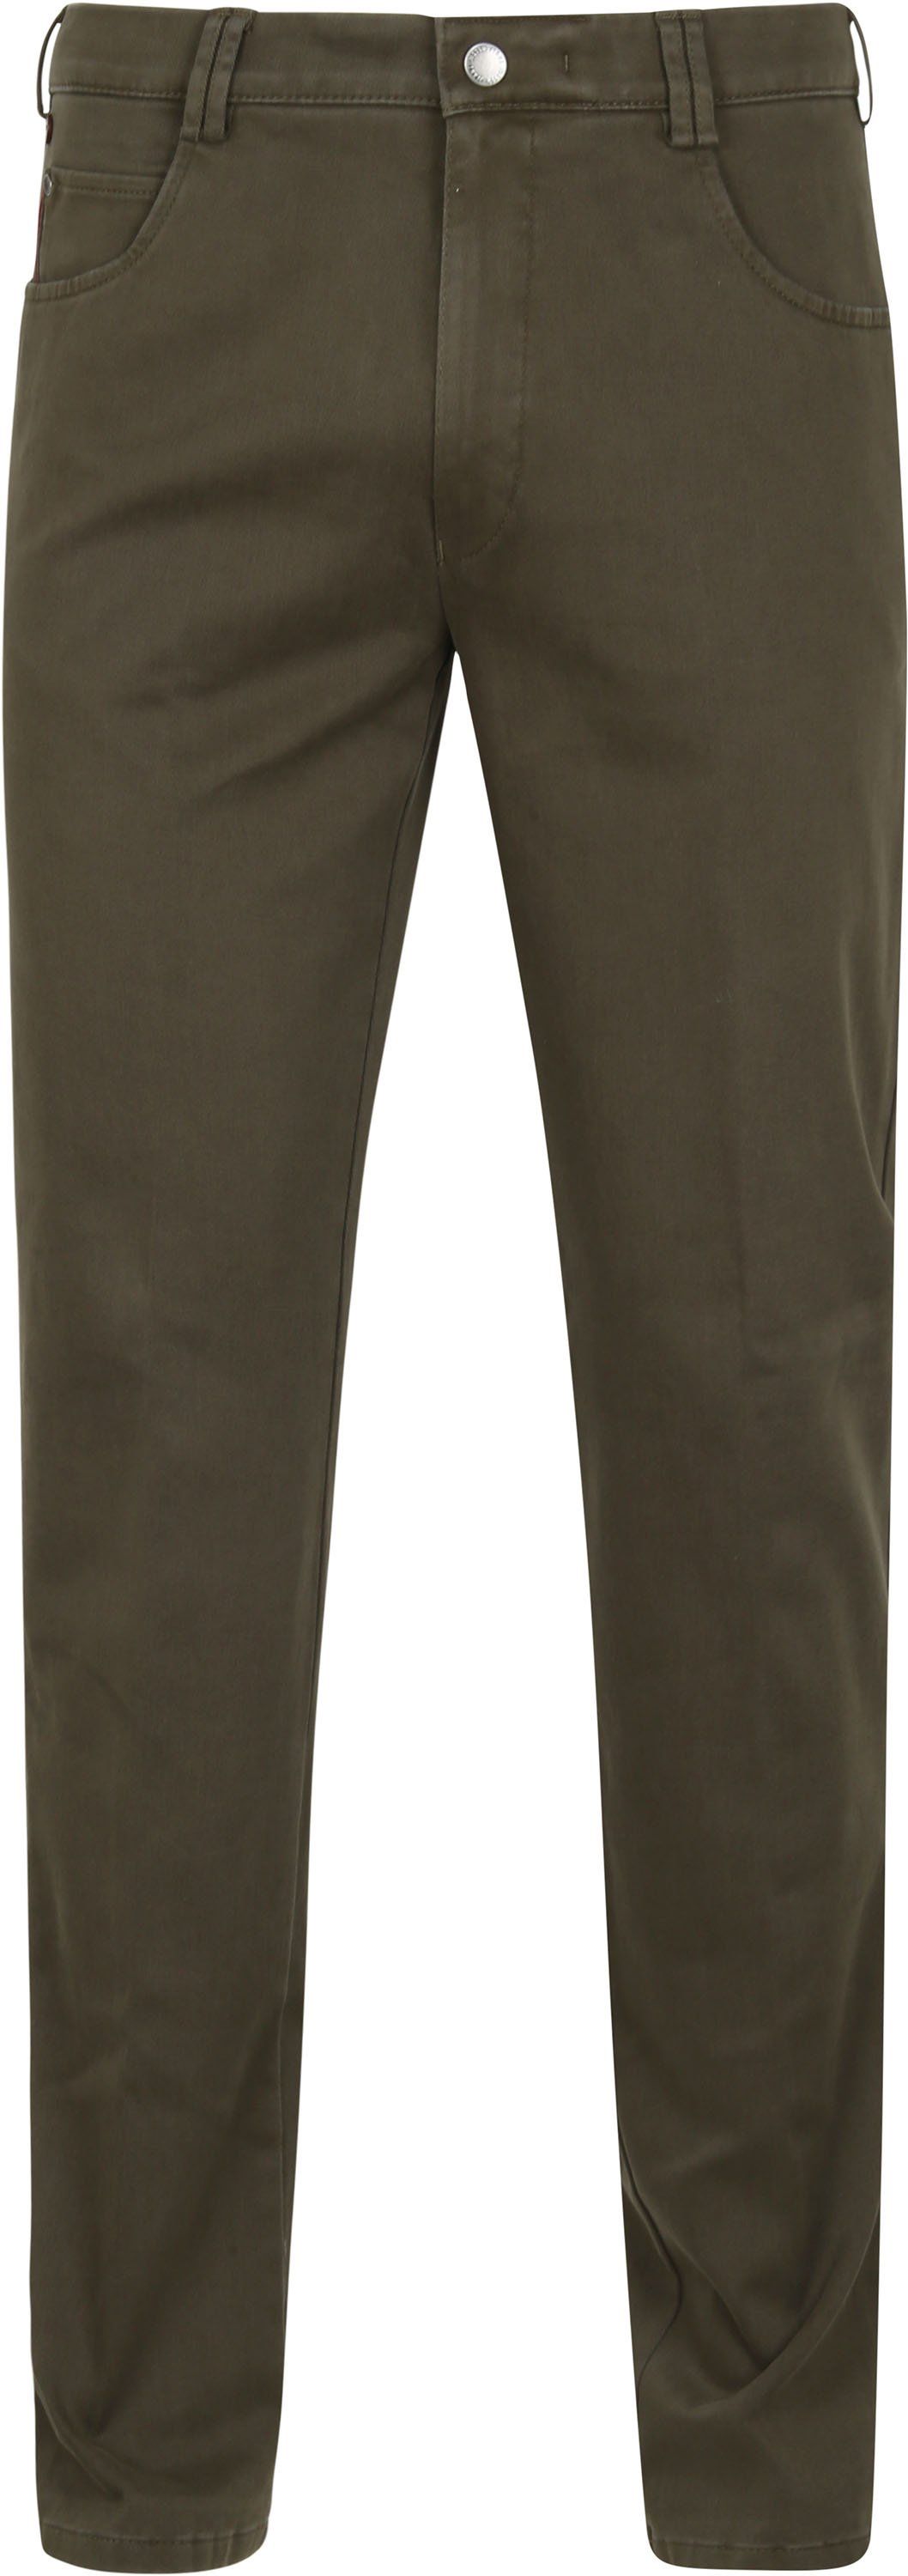 Meyer Pants Diego Green size W 34